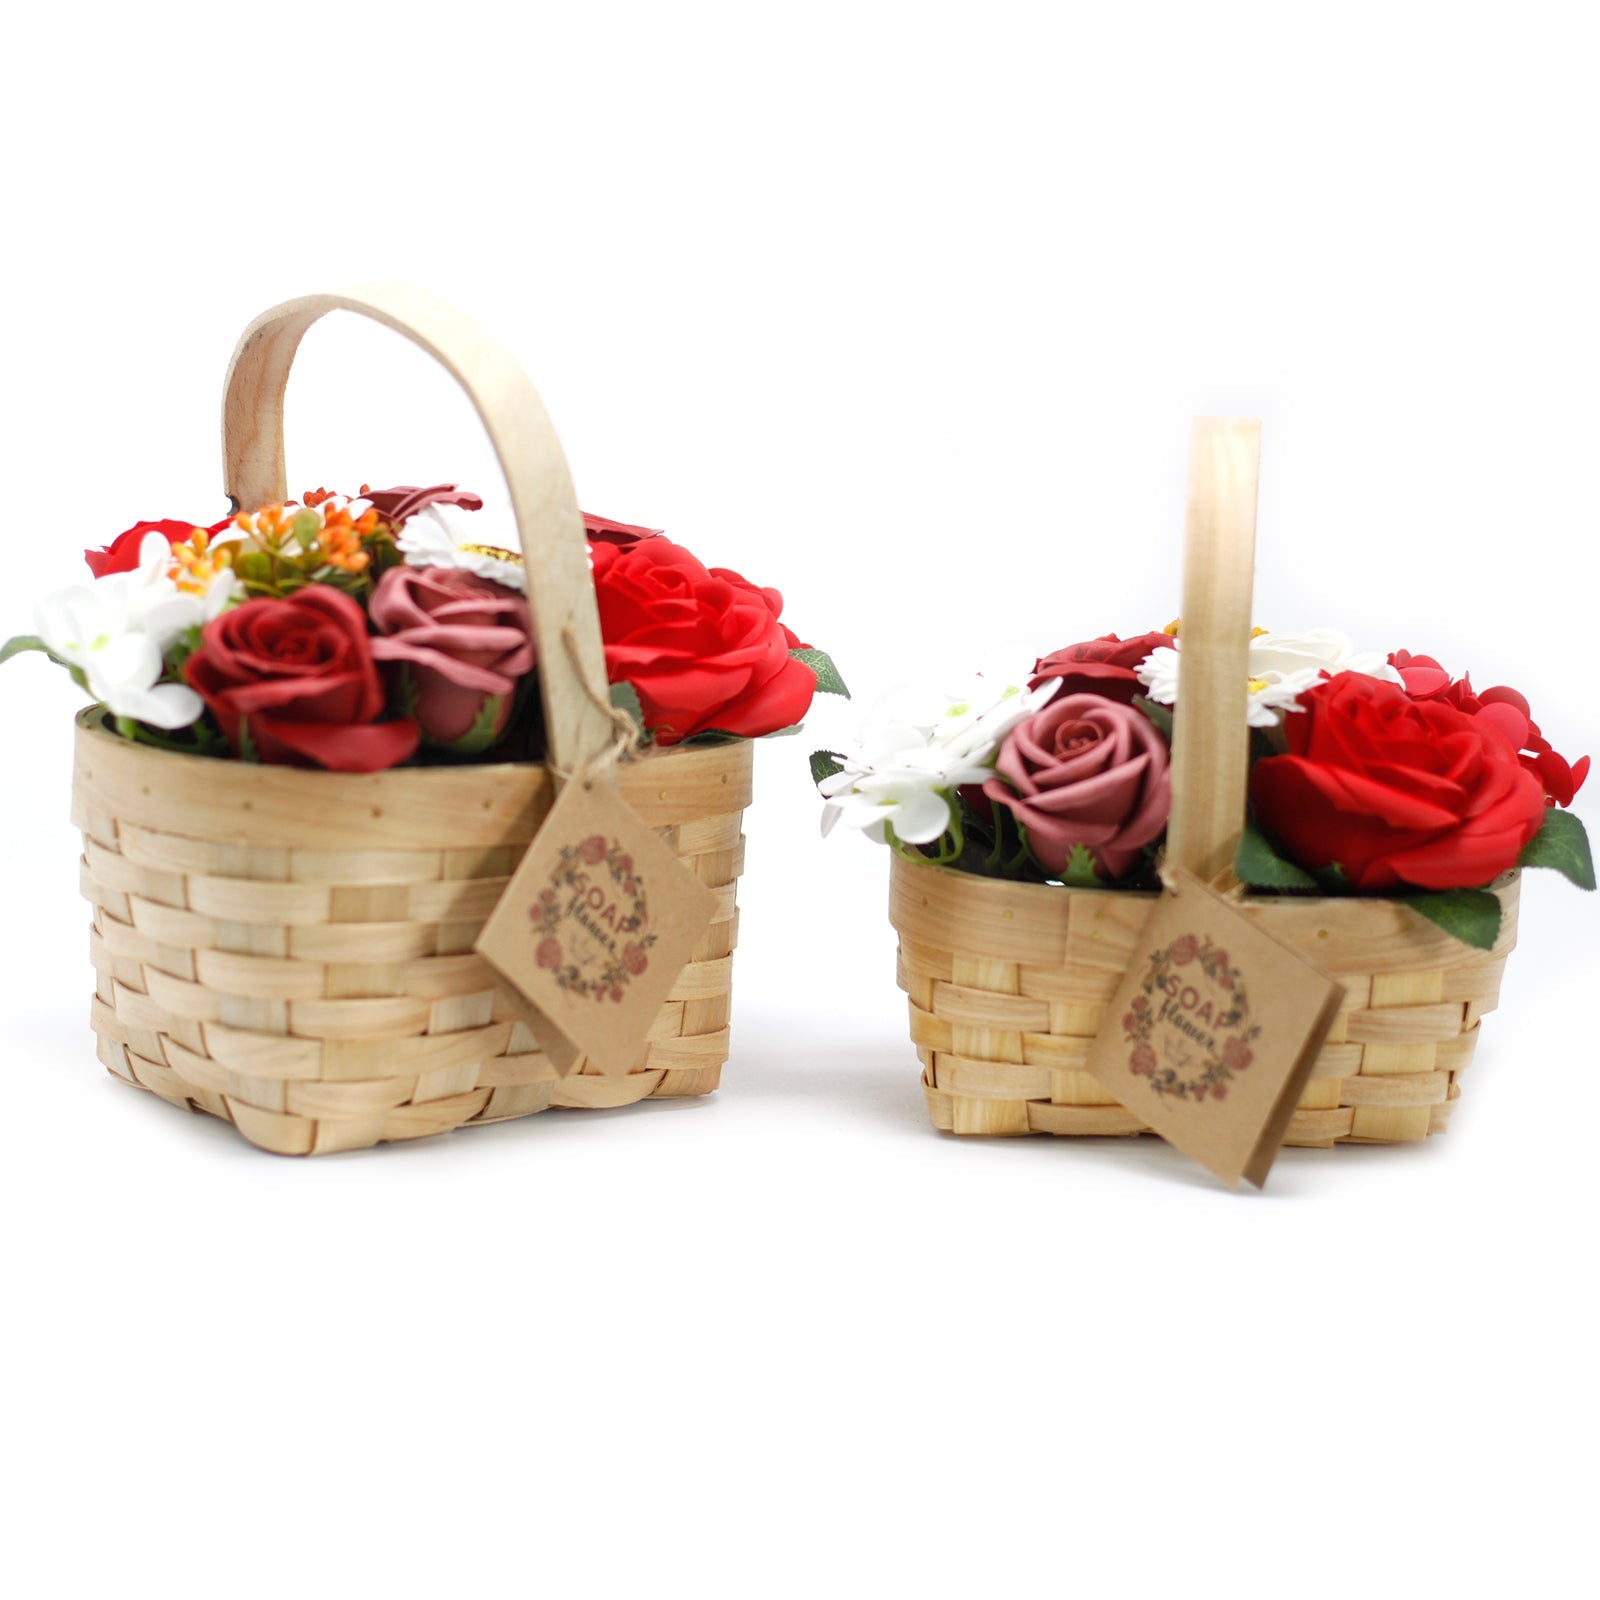 Large Red Bouquet of Soap Flowers in Wicker Basket - Ultrabee